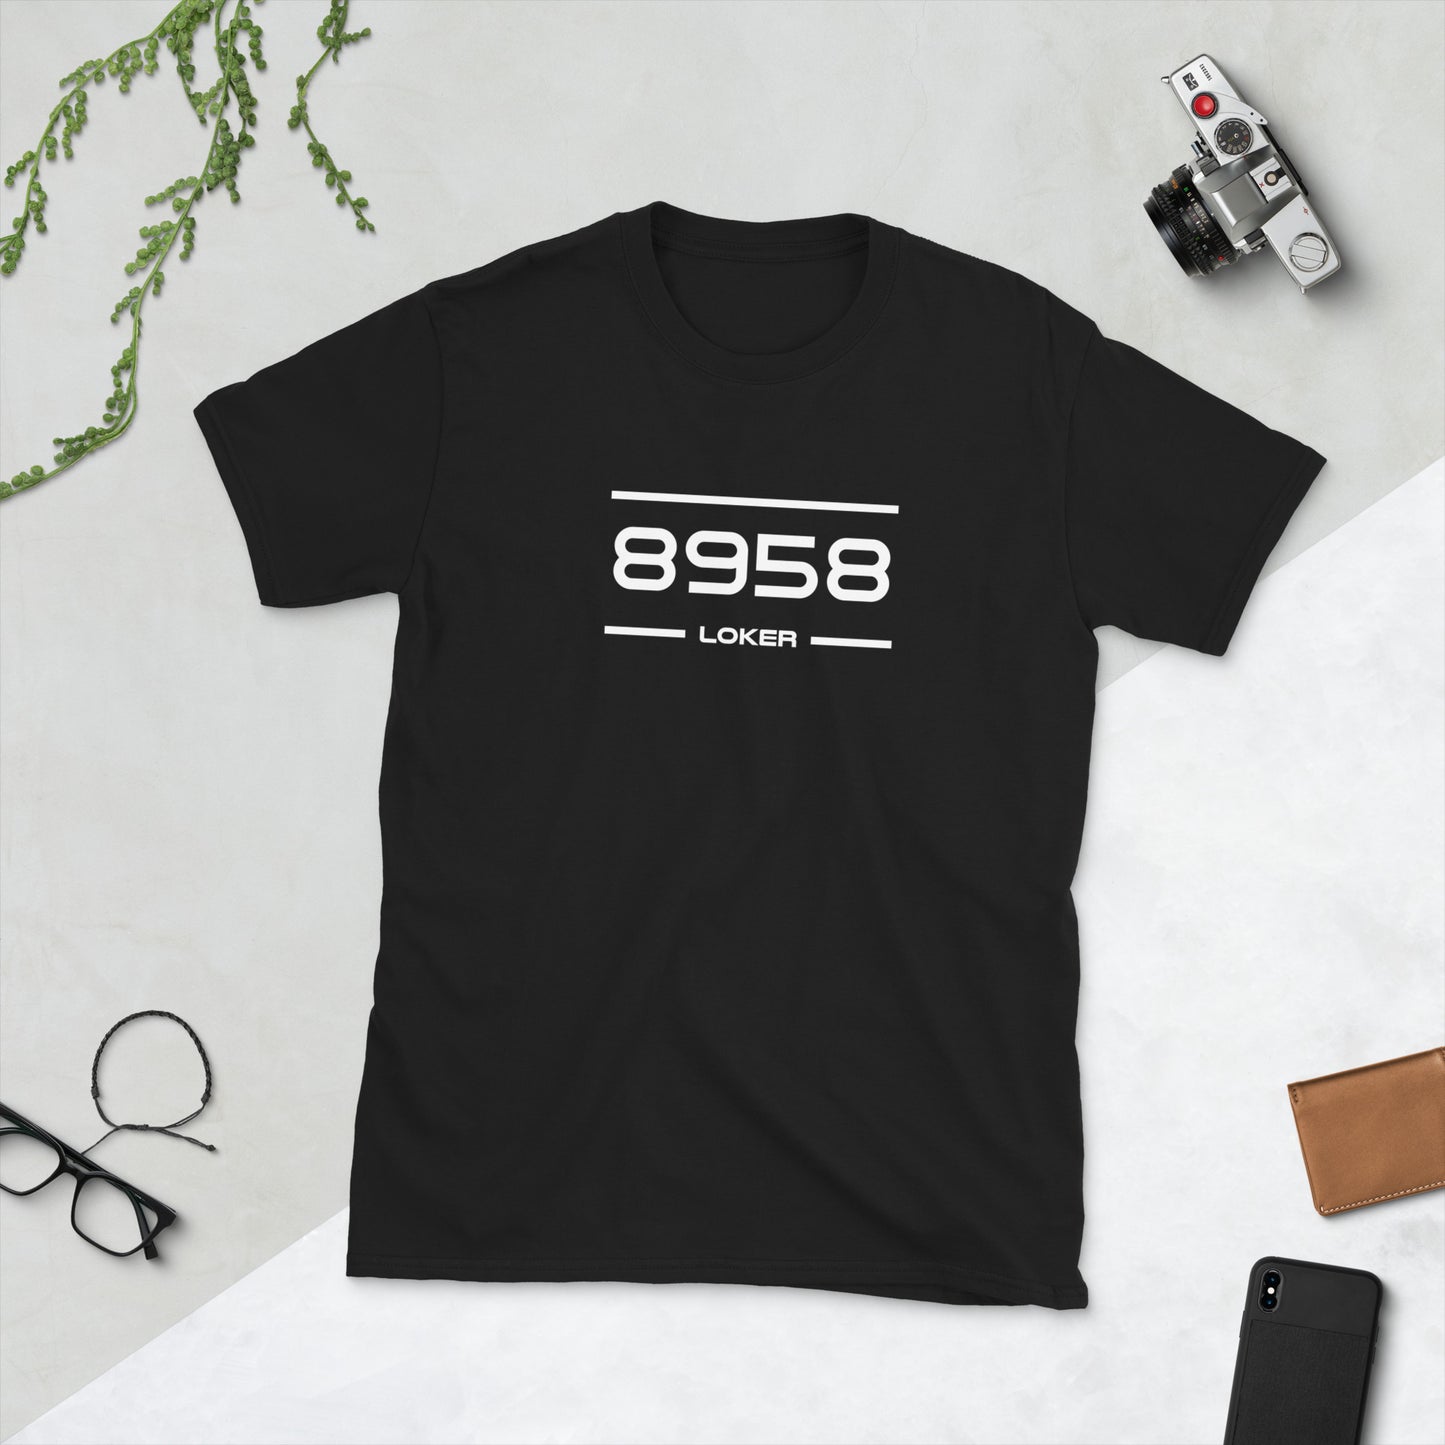 Tshirt - 8958 - Loker